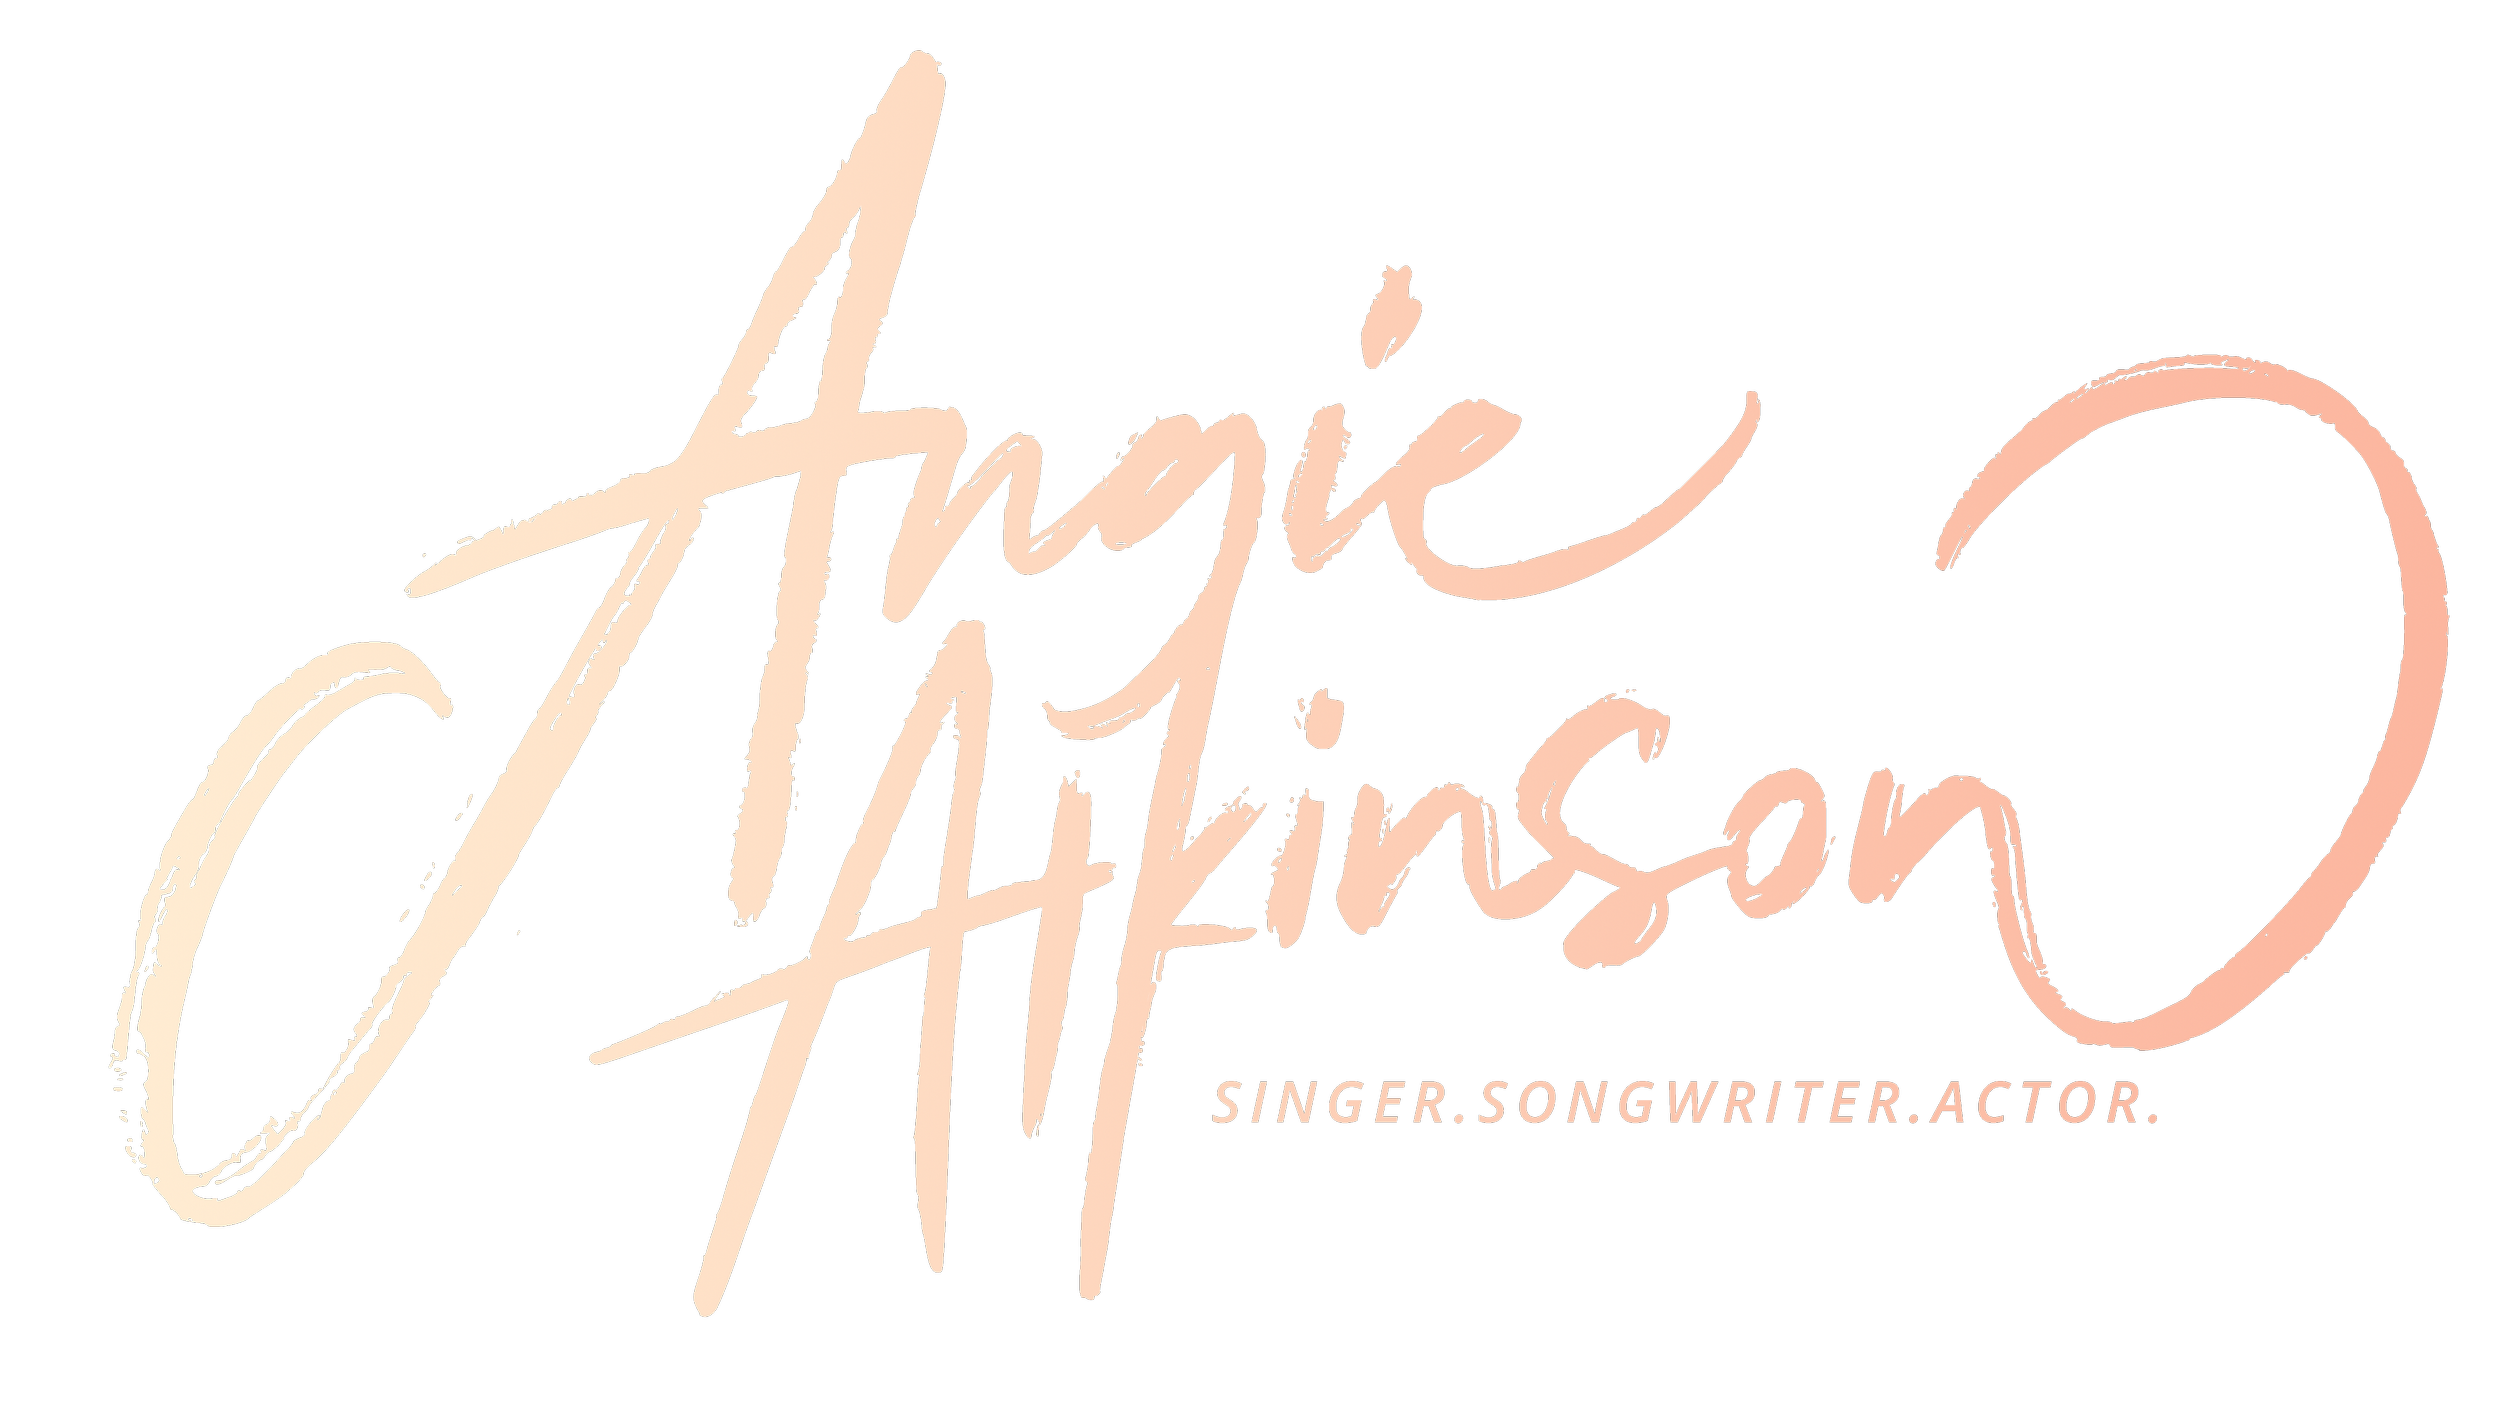 Angie Atkinson